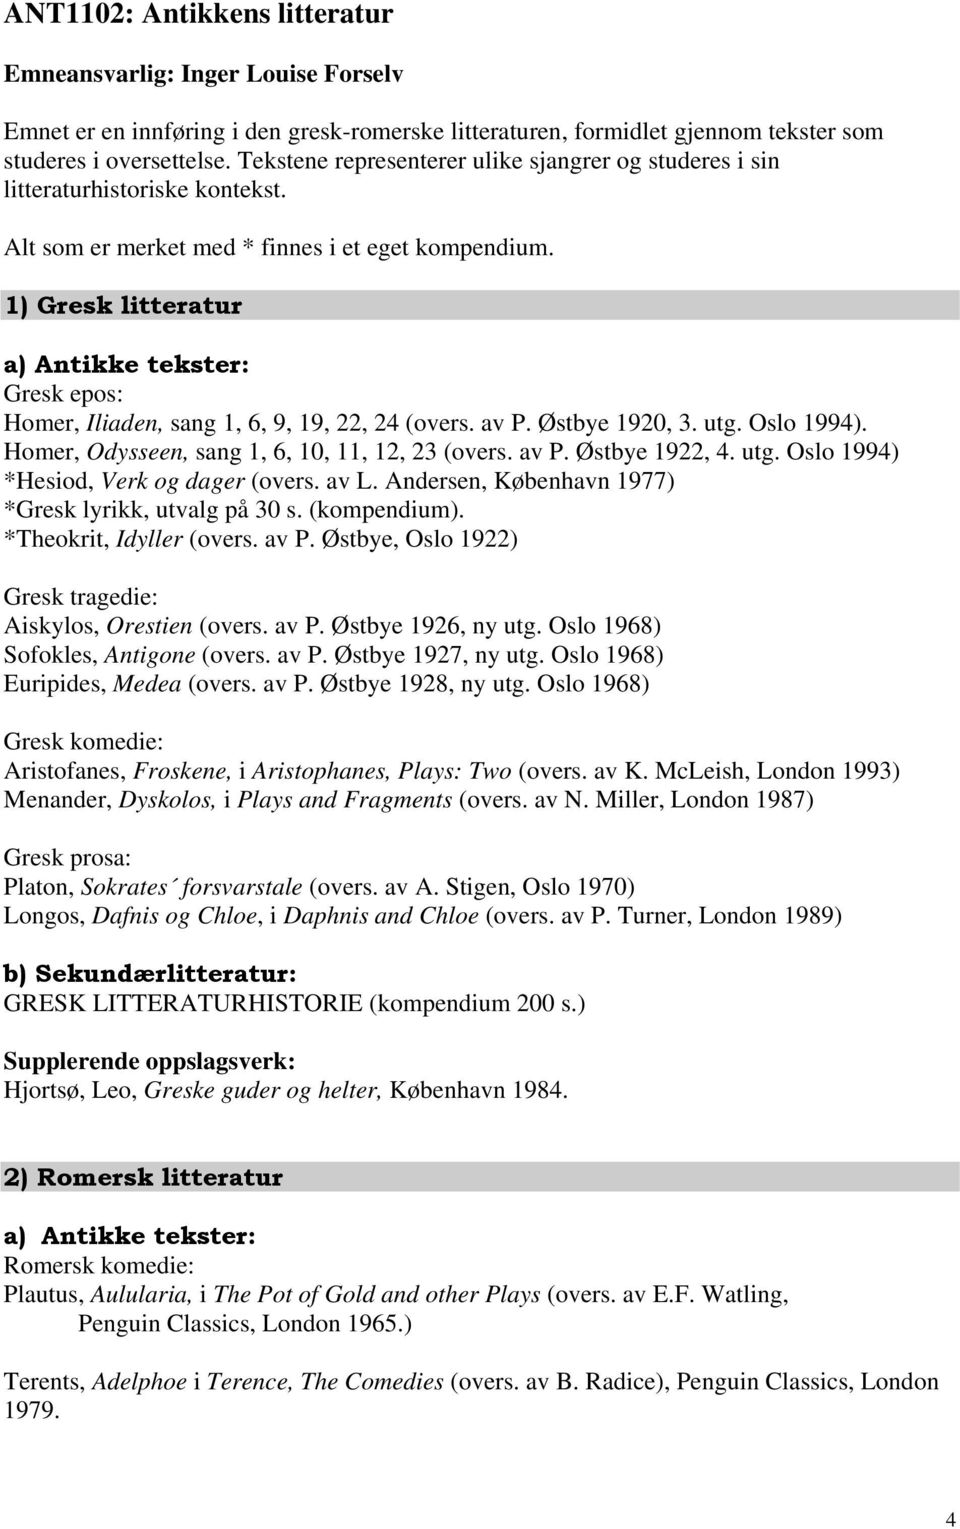 1) Gresk litteratur a) Antikke tekster: Gresk epos: Homer, Iliaden, sang 1, 6, 9, 19, 22, 24 (overs. av P. Østbye 1920, 3. utg. Oslo 1994). Homer, Odysseen, sang 1, 6, 10, 11, 12, 23 (overs. av P. Østbye 1922, 4.